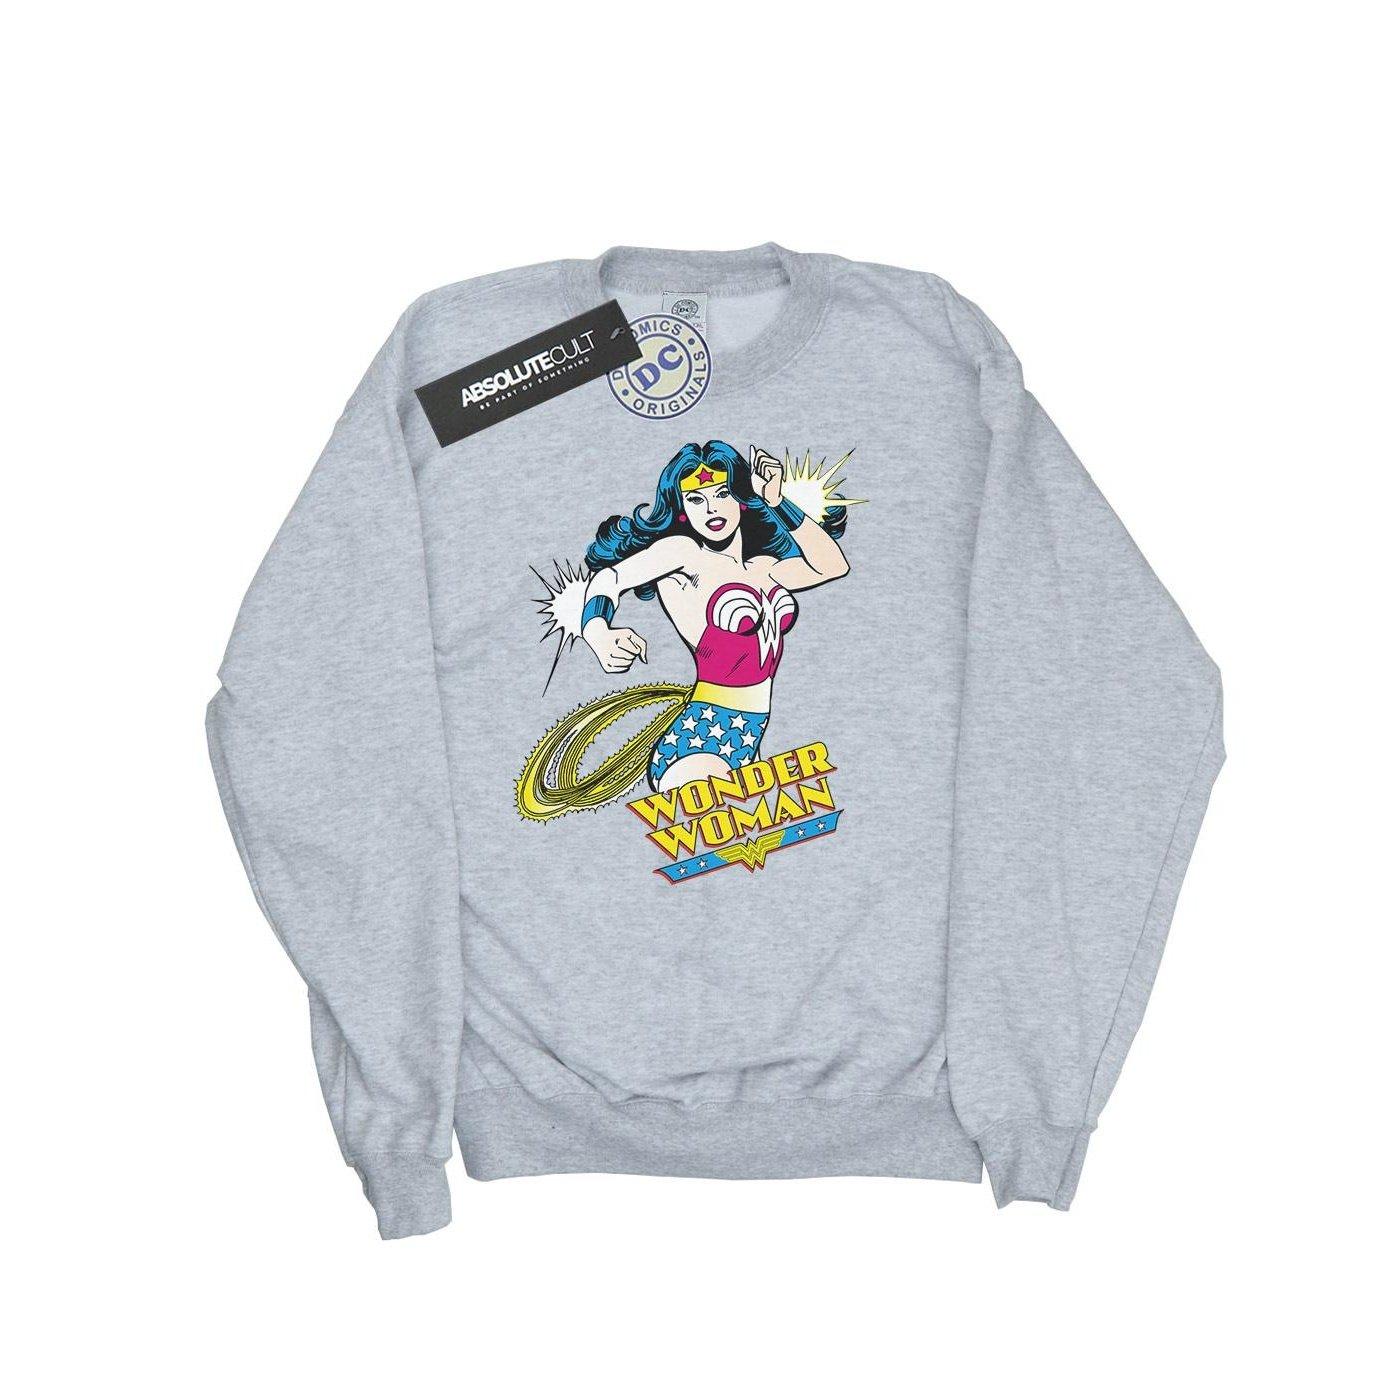 Sweatshirt Damen Grau XL von Wonder Woman